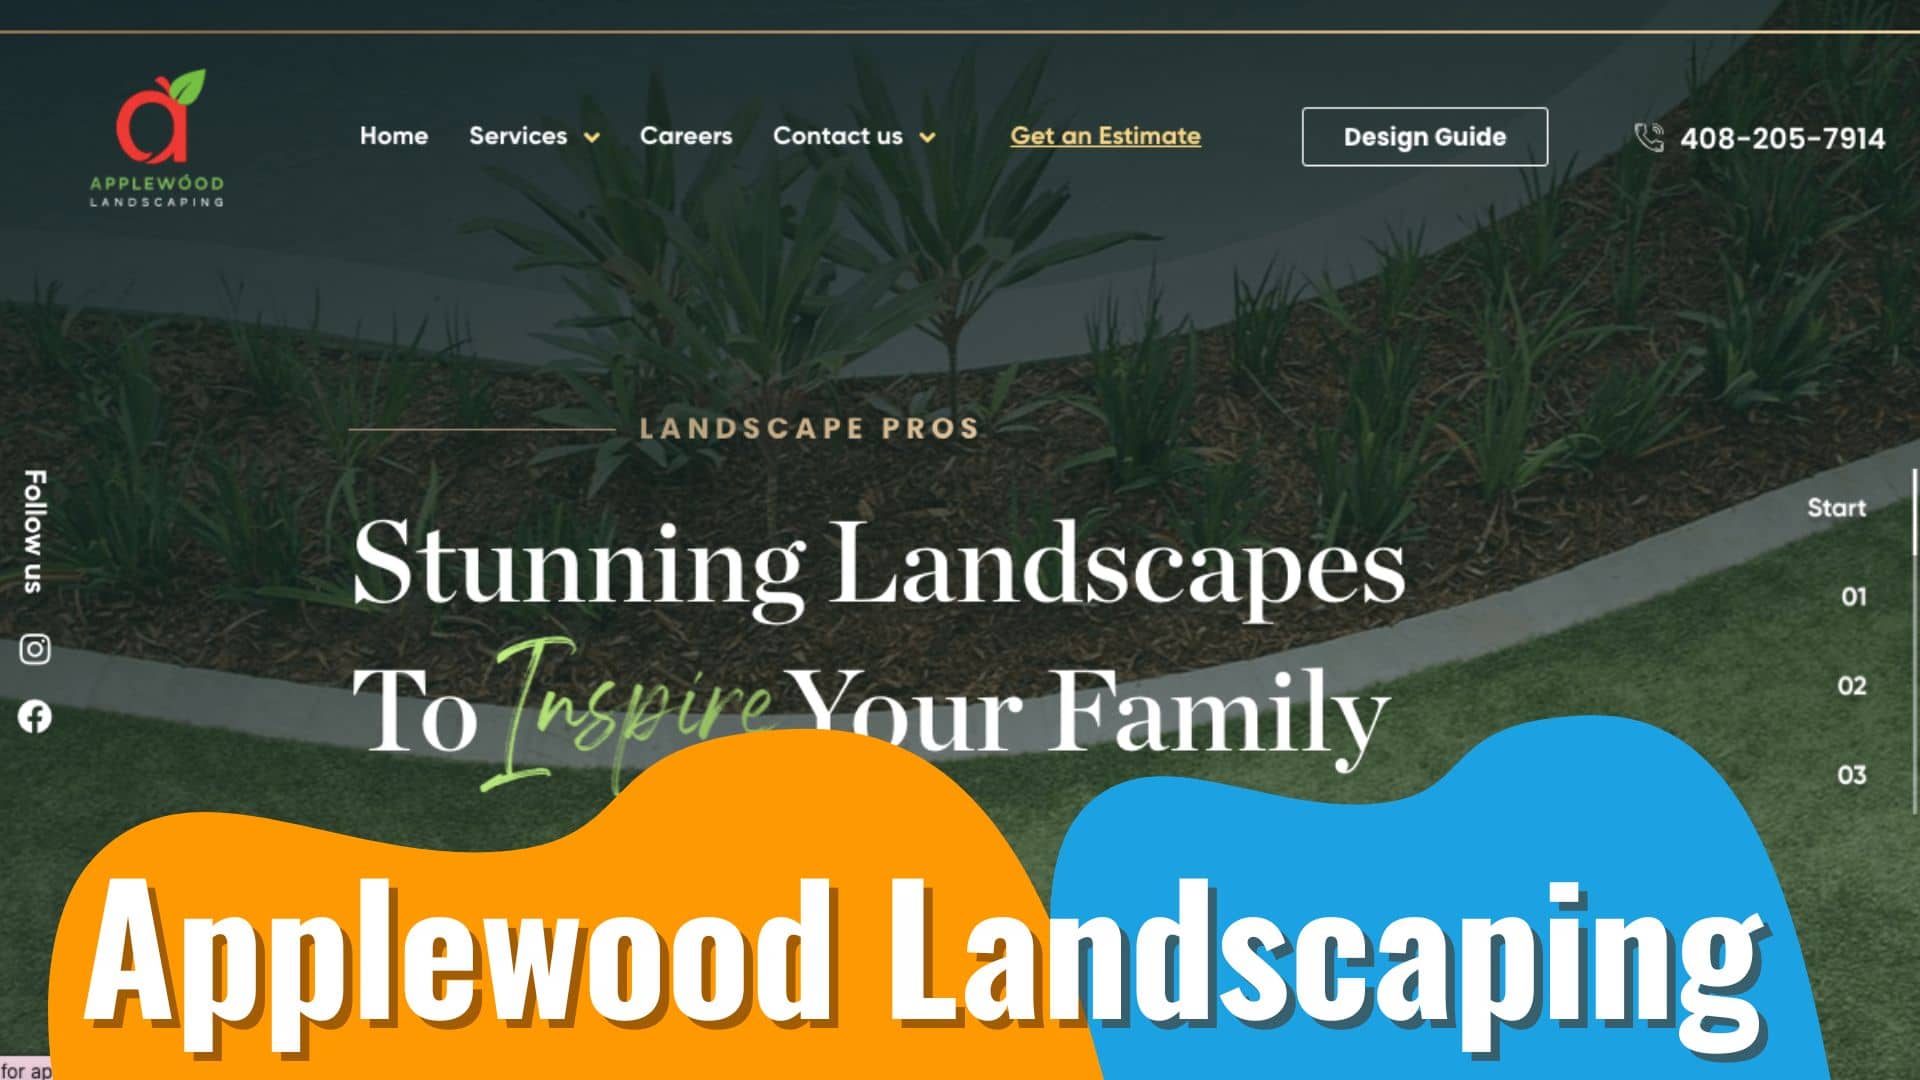 Applewood Landscaping San Jose